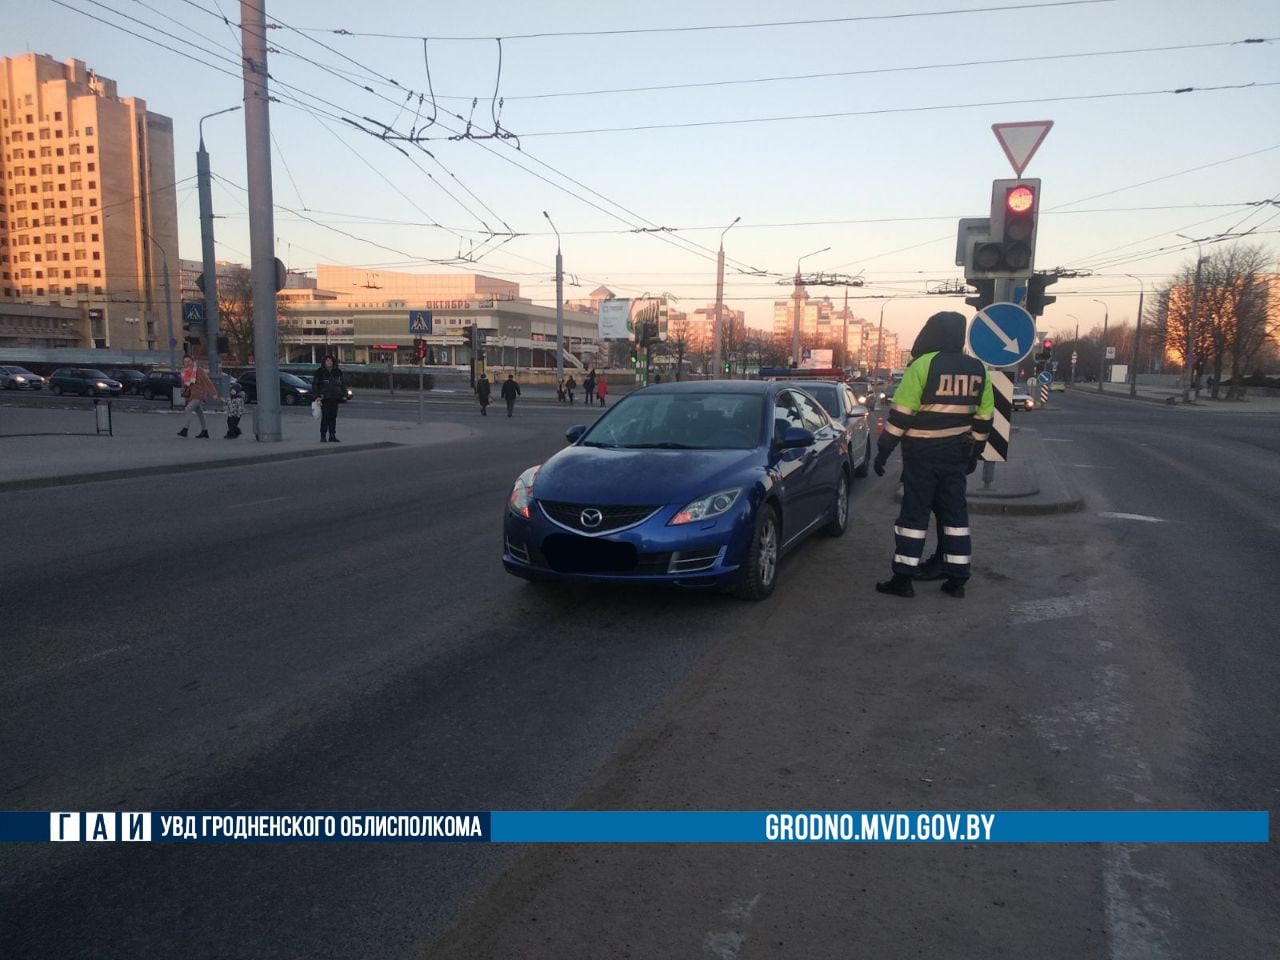 Утром в Гродно водитель Mazda сбил сразу двух женщин на пешеходном переходе